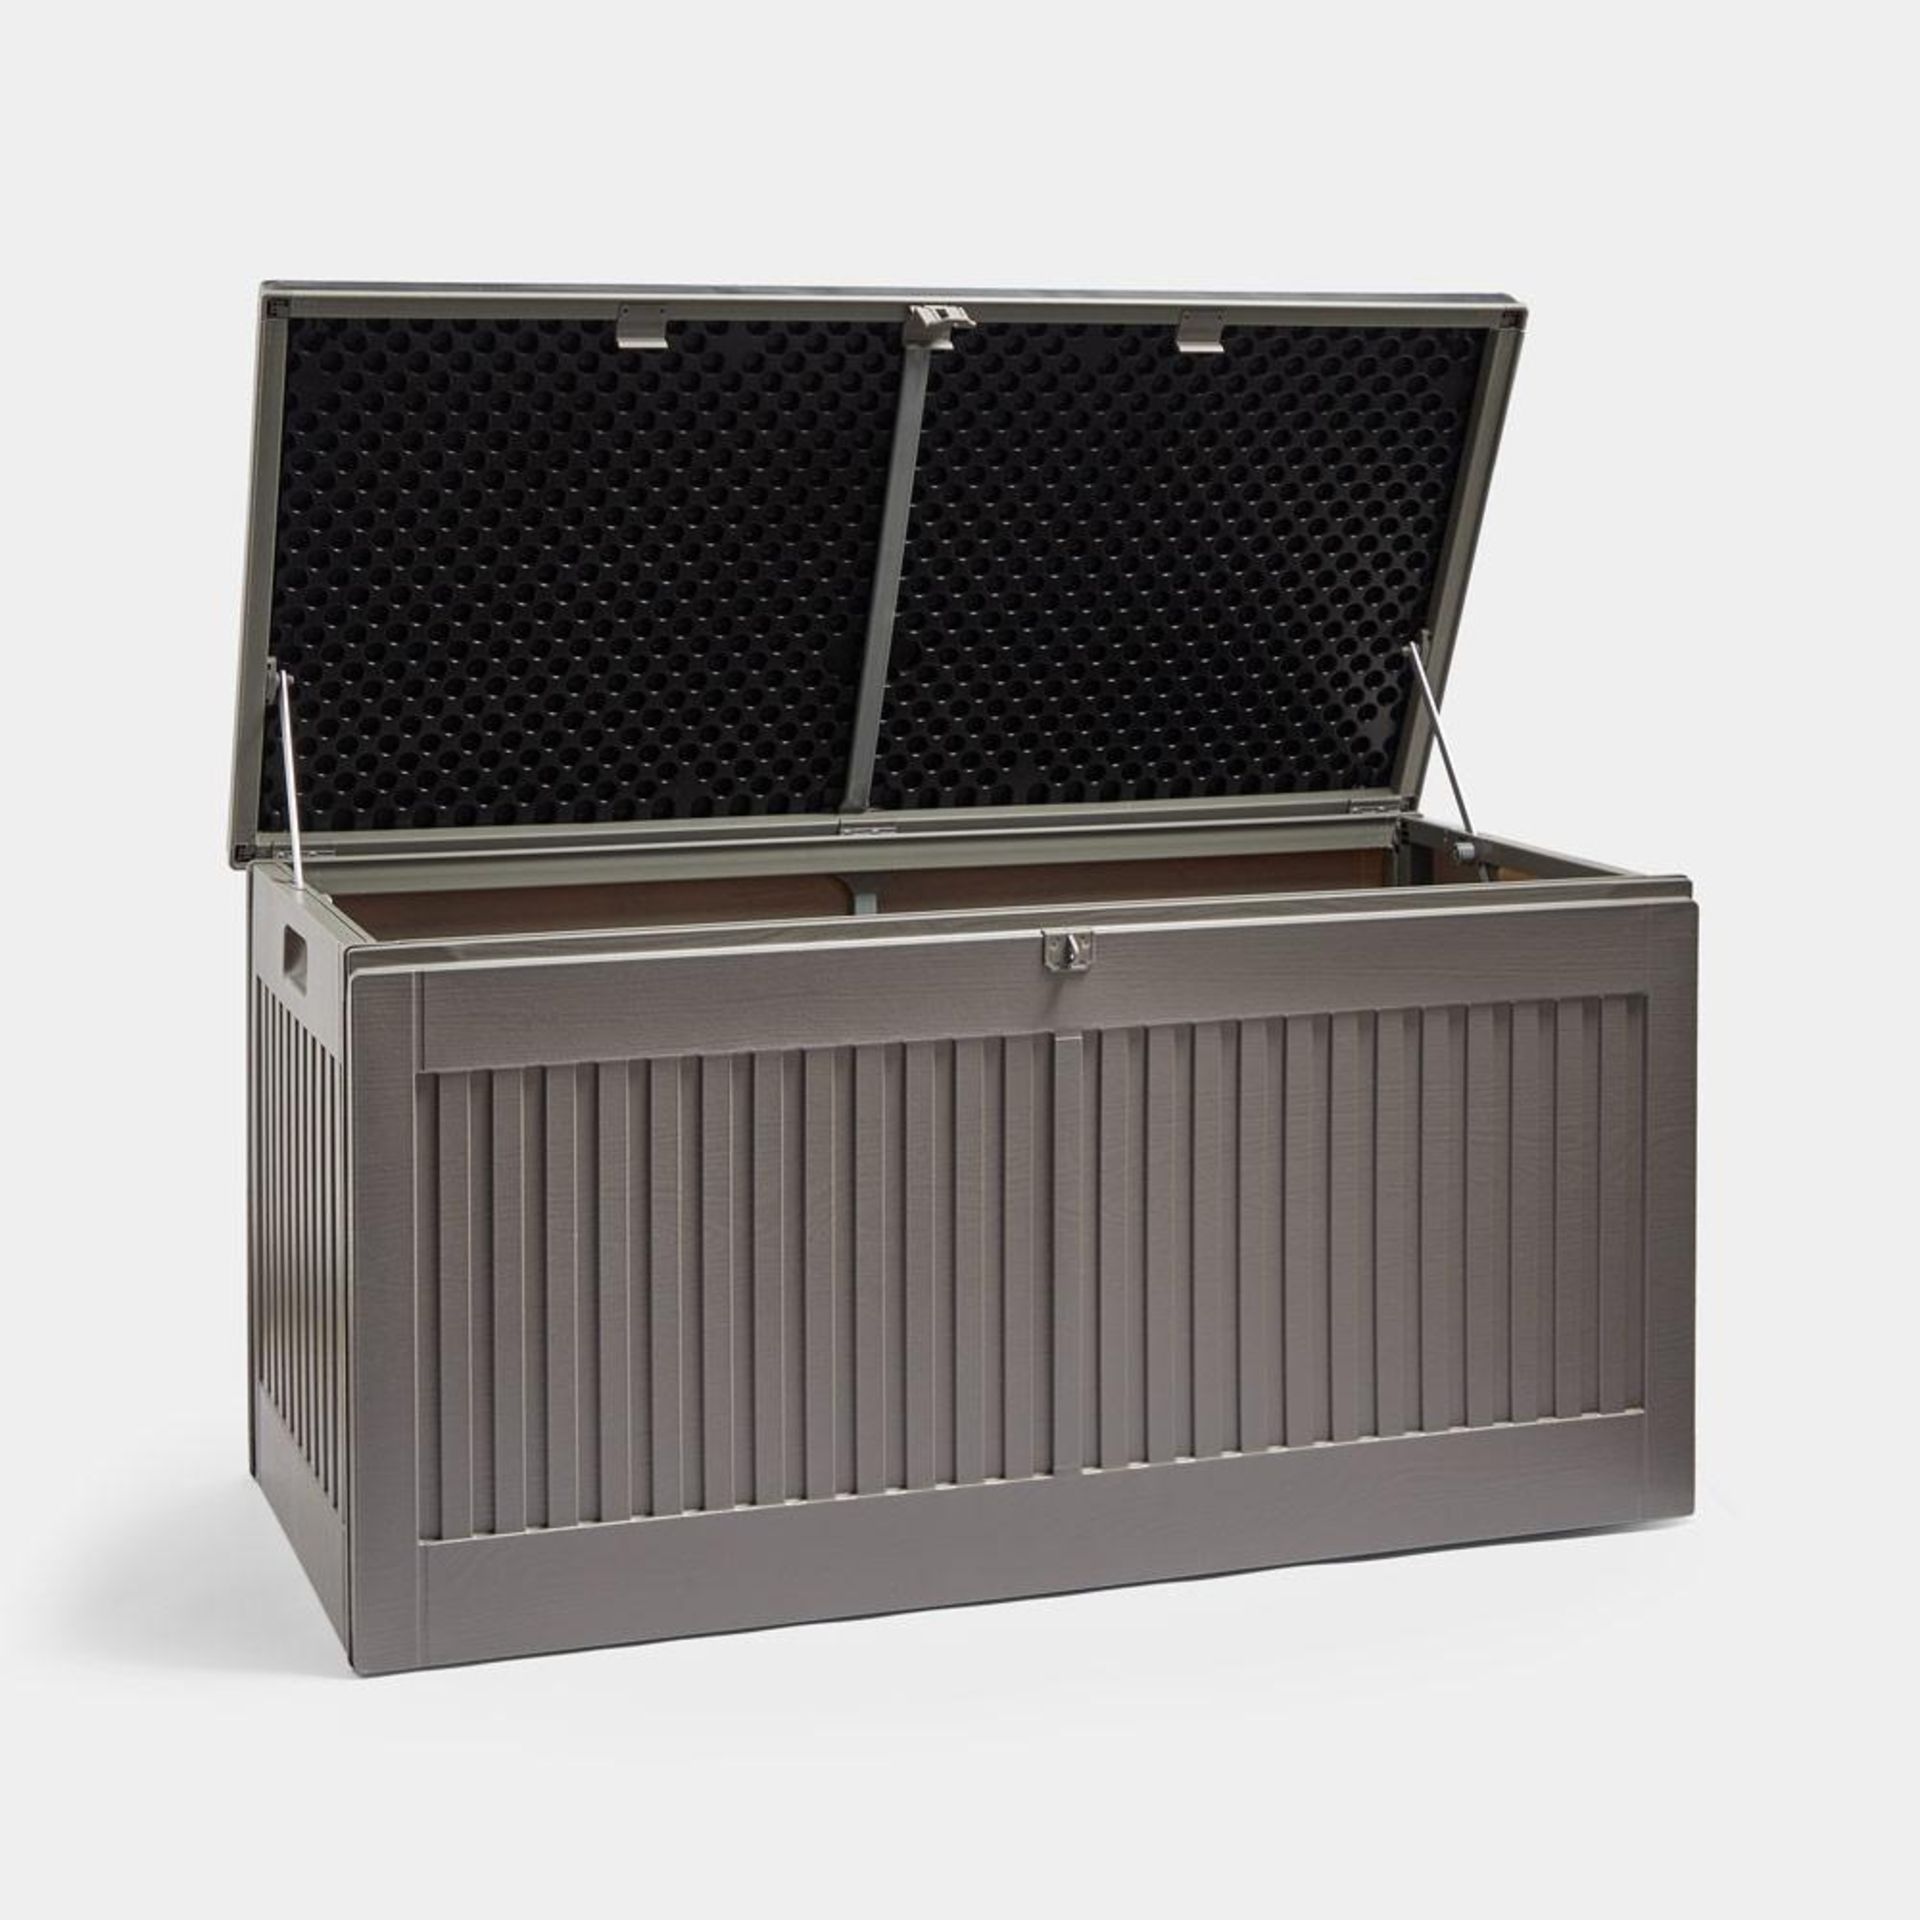 270L Plastic Outdoor Storage Box - PW 270L Plastic Storage Box Aluminium Sliding Bar HingeSlam-proof